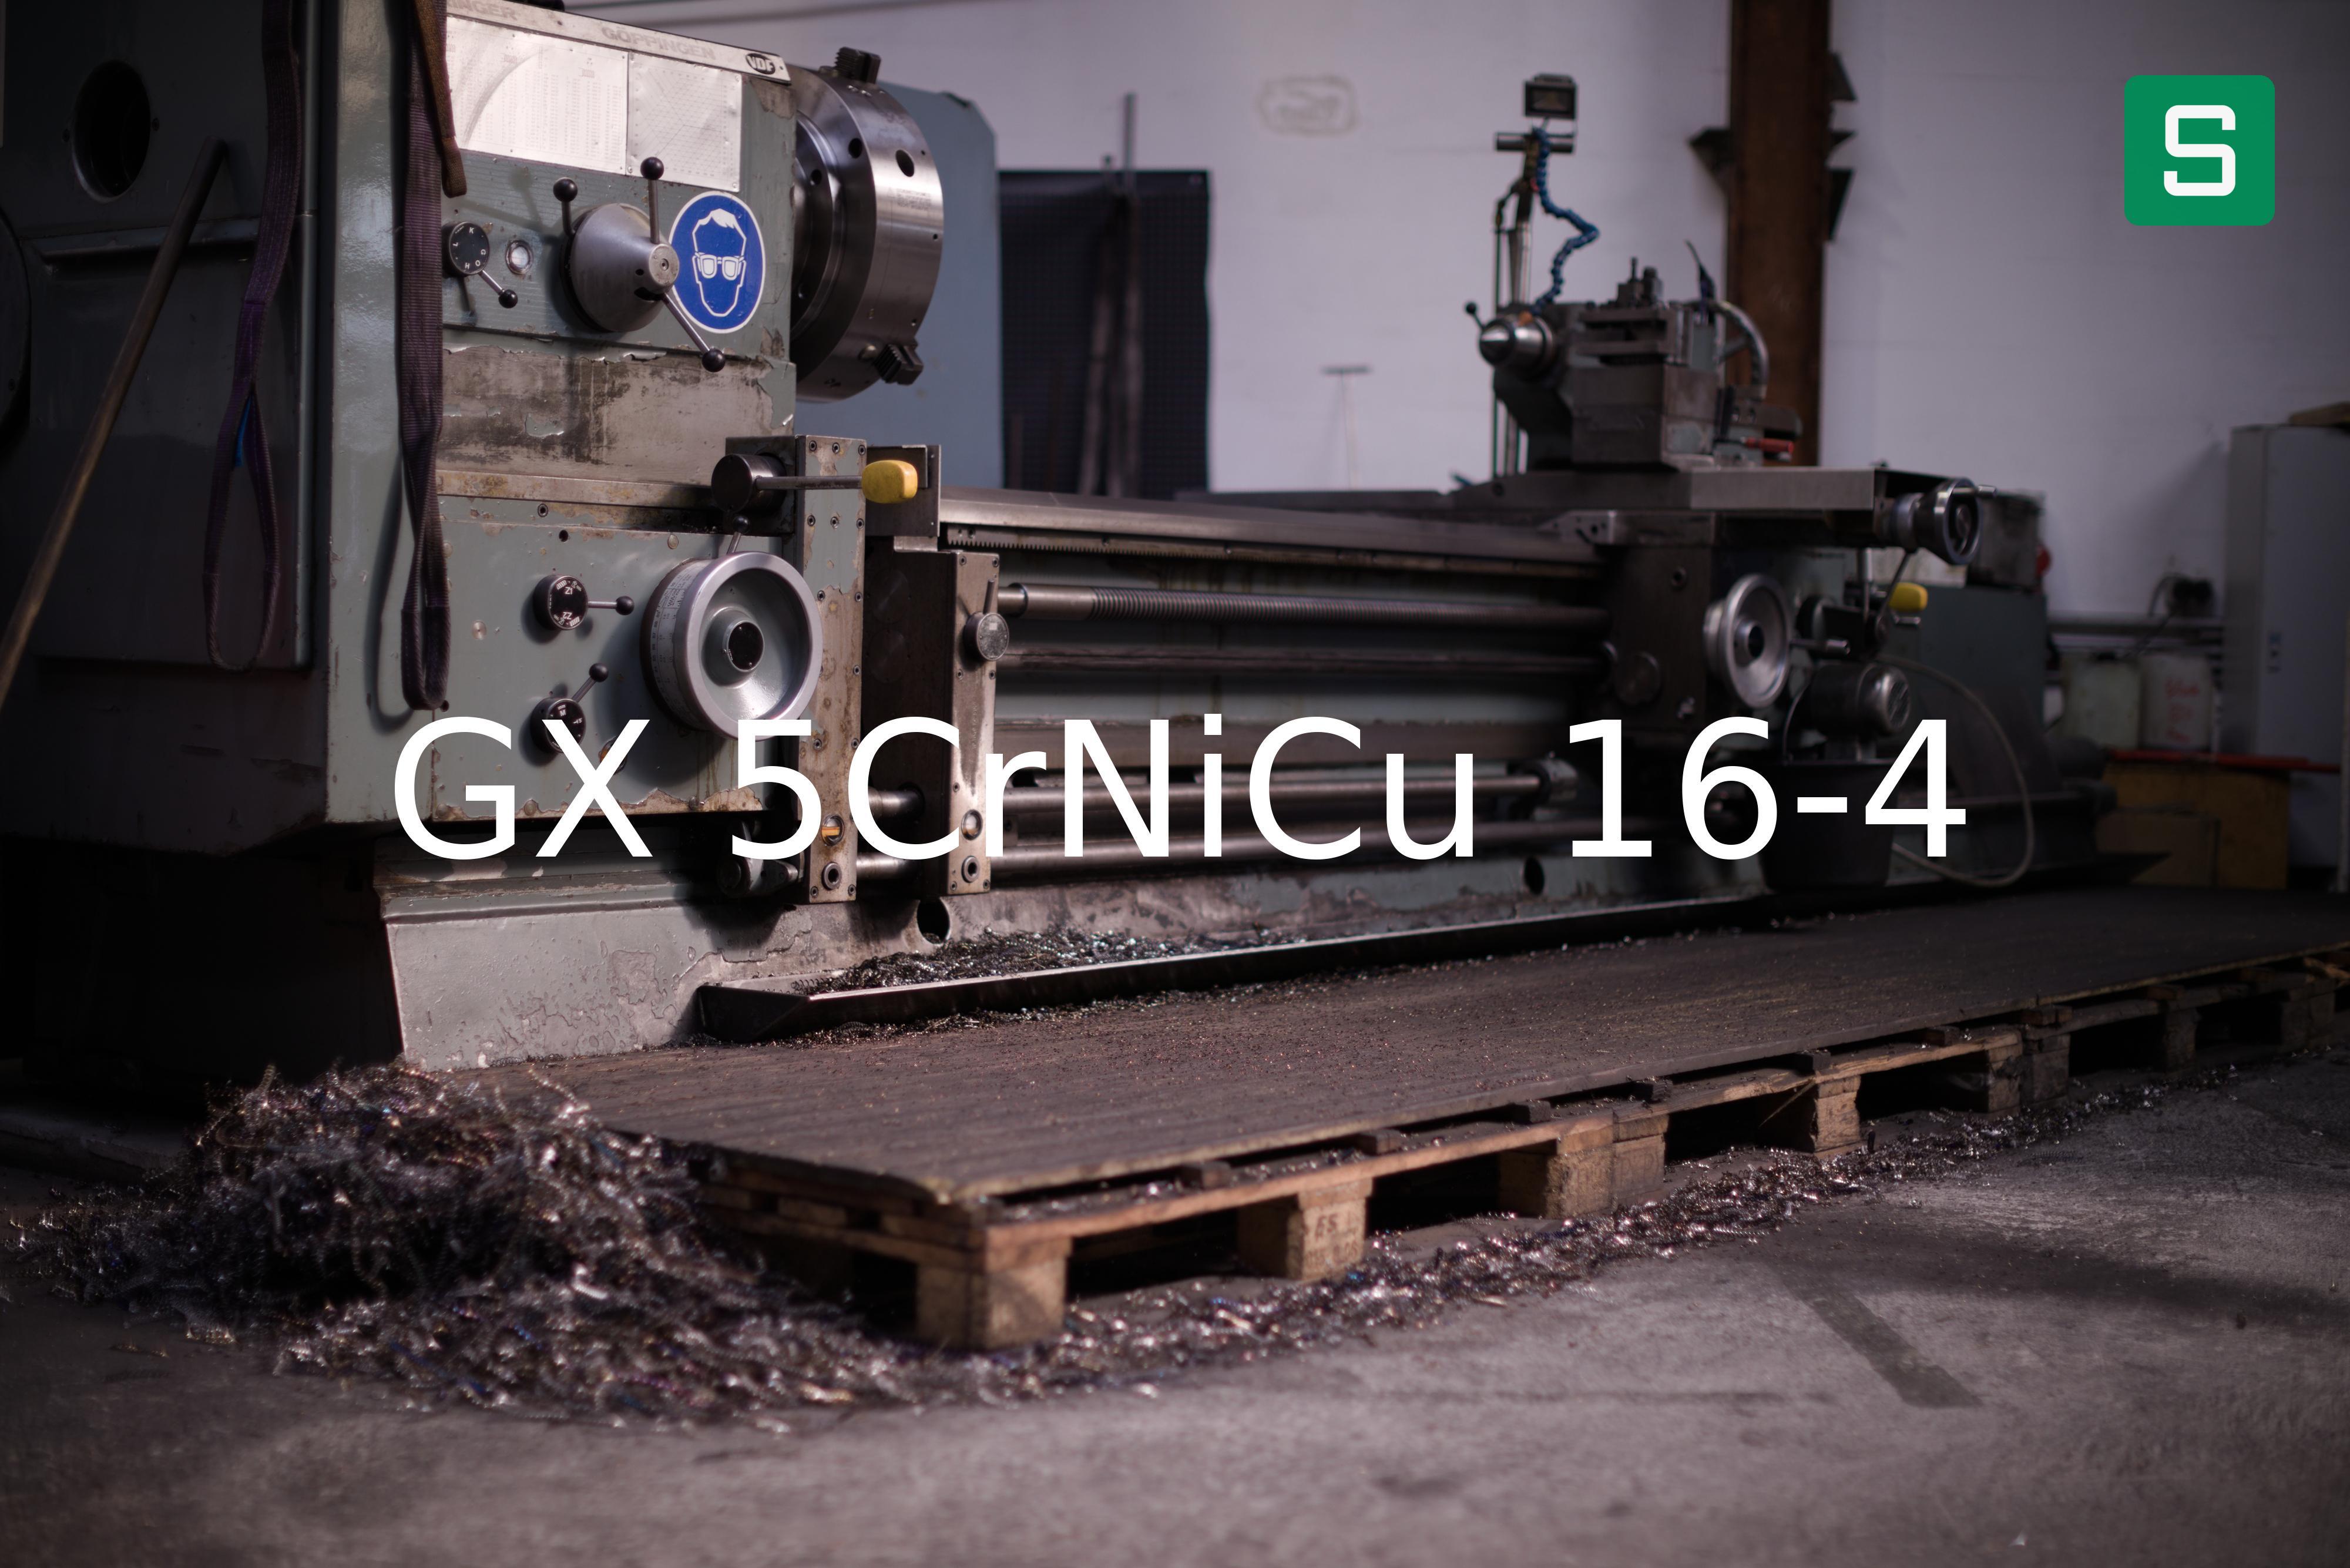 Steel Material: GX 5CrNiCu 16-4